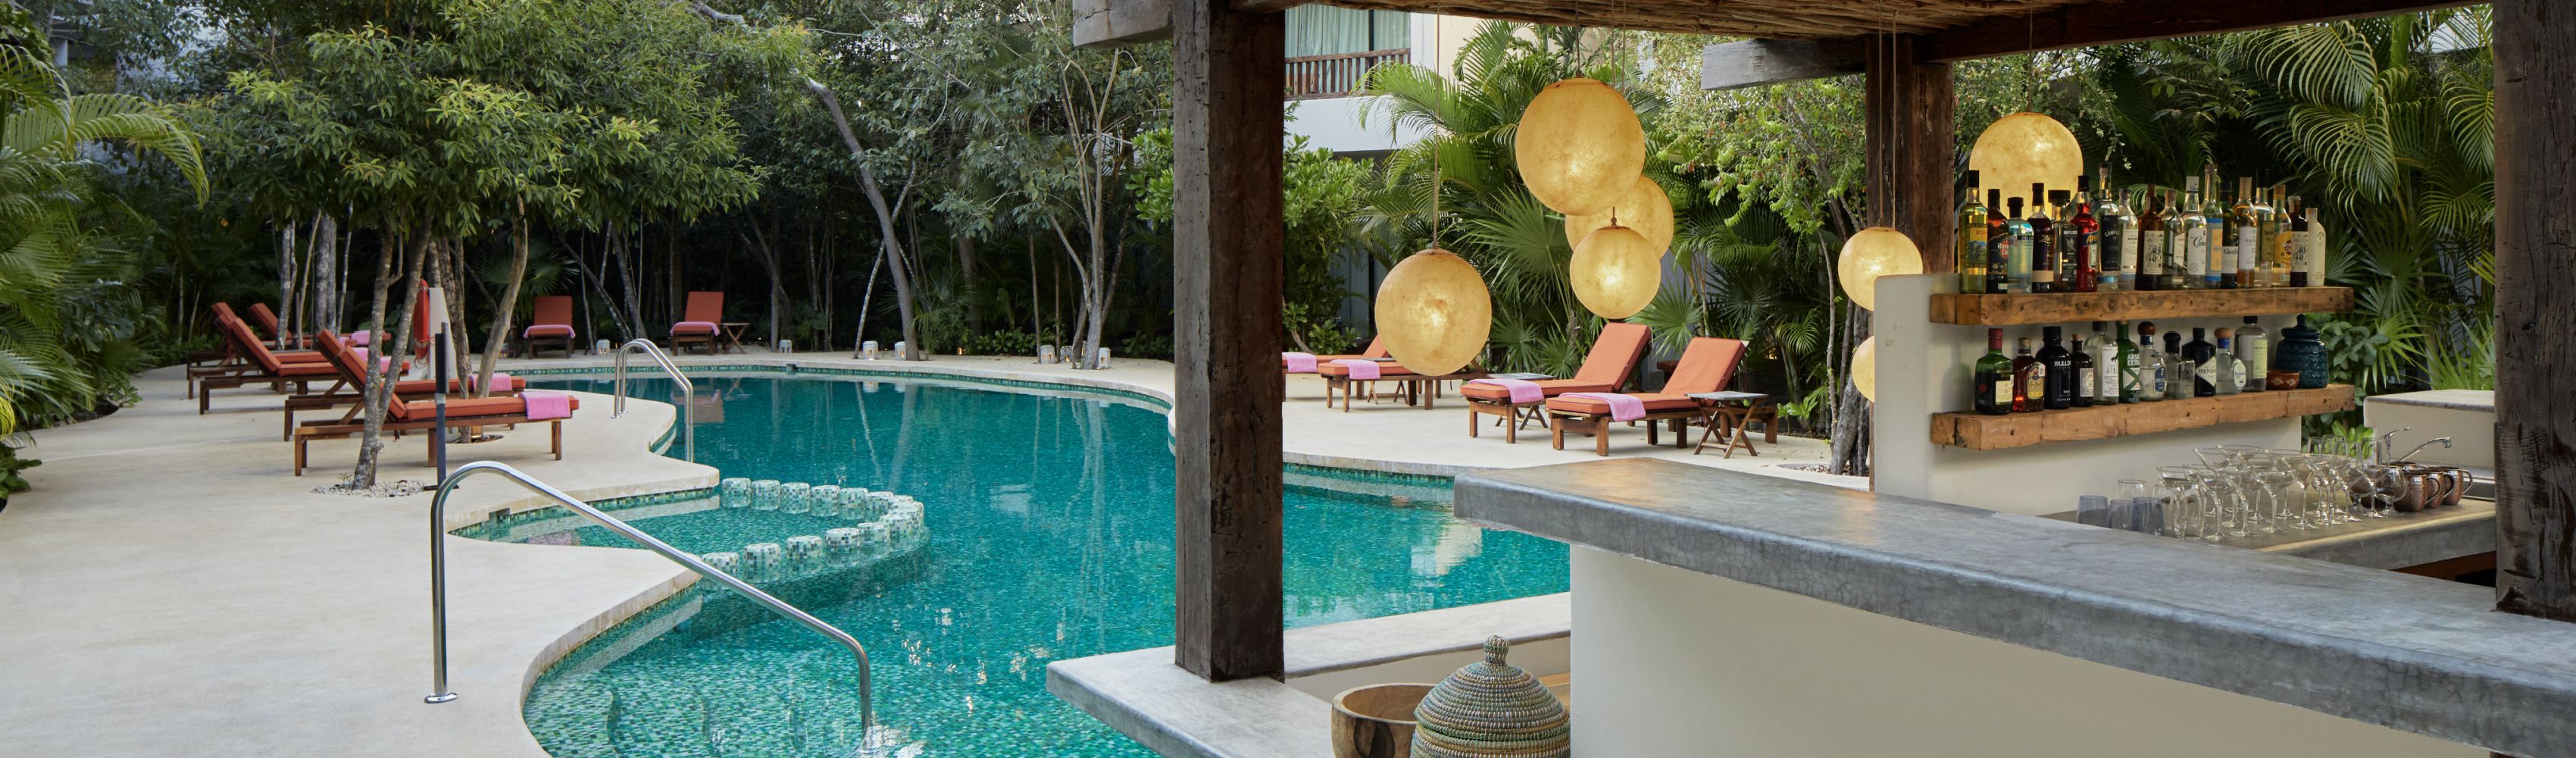 Espectacular piscina y bar al aire libre en el hotel Kimpton de Tulum